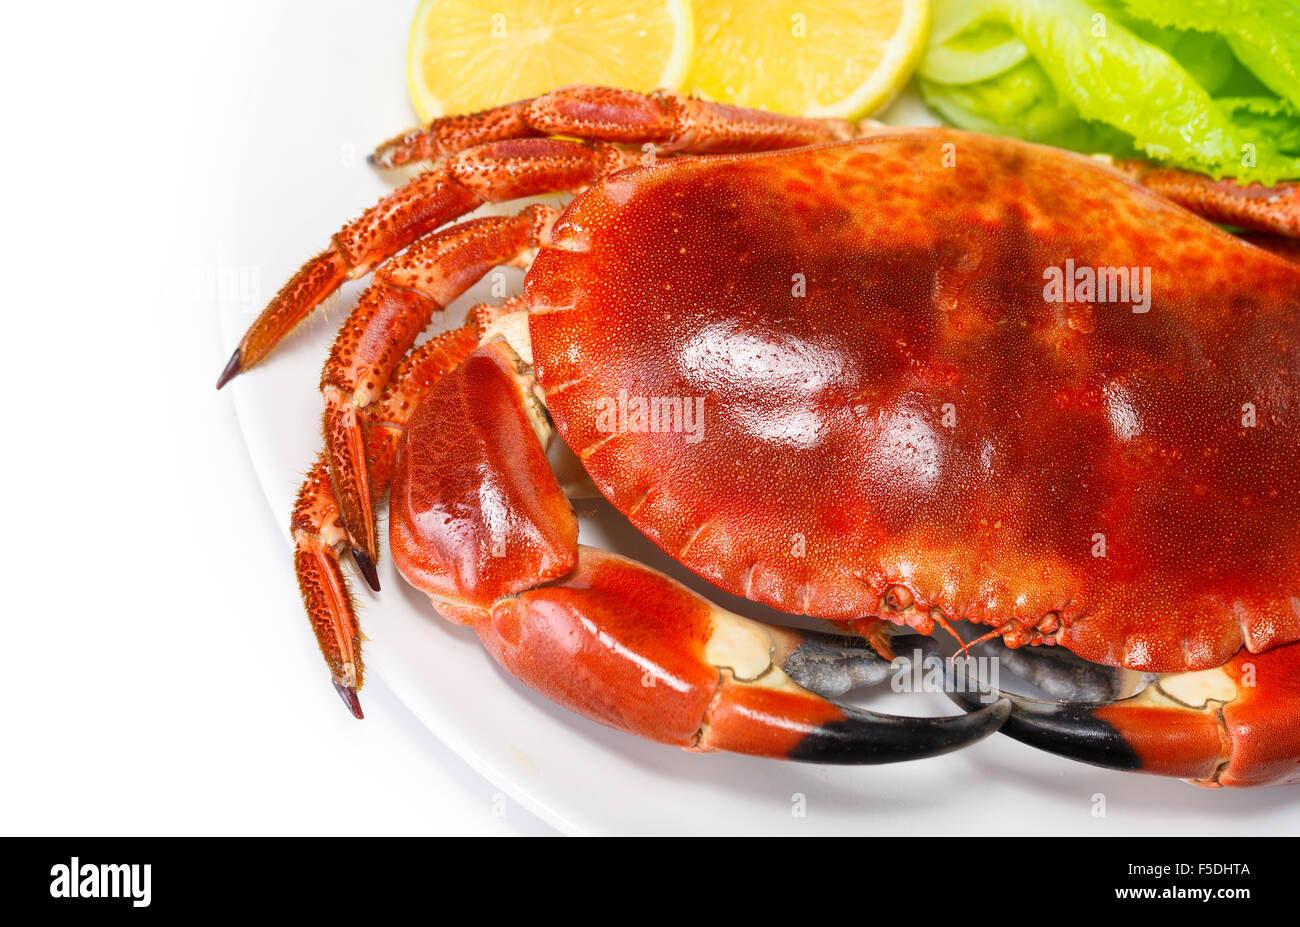 Délicieux avec du crabe rouge bouilli salade de laitue verte fraîche et citron isolé sur fond blanc, de délicieux fruits de mer Banque D'Images